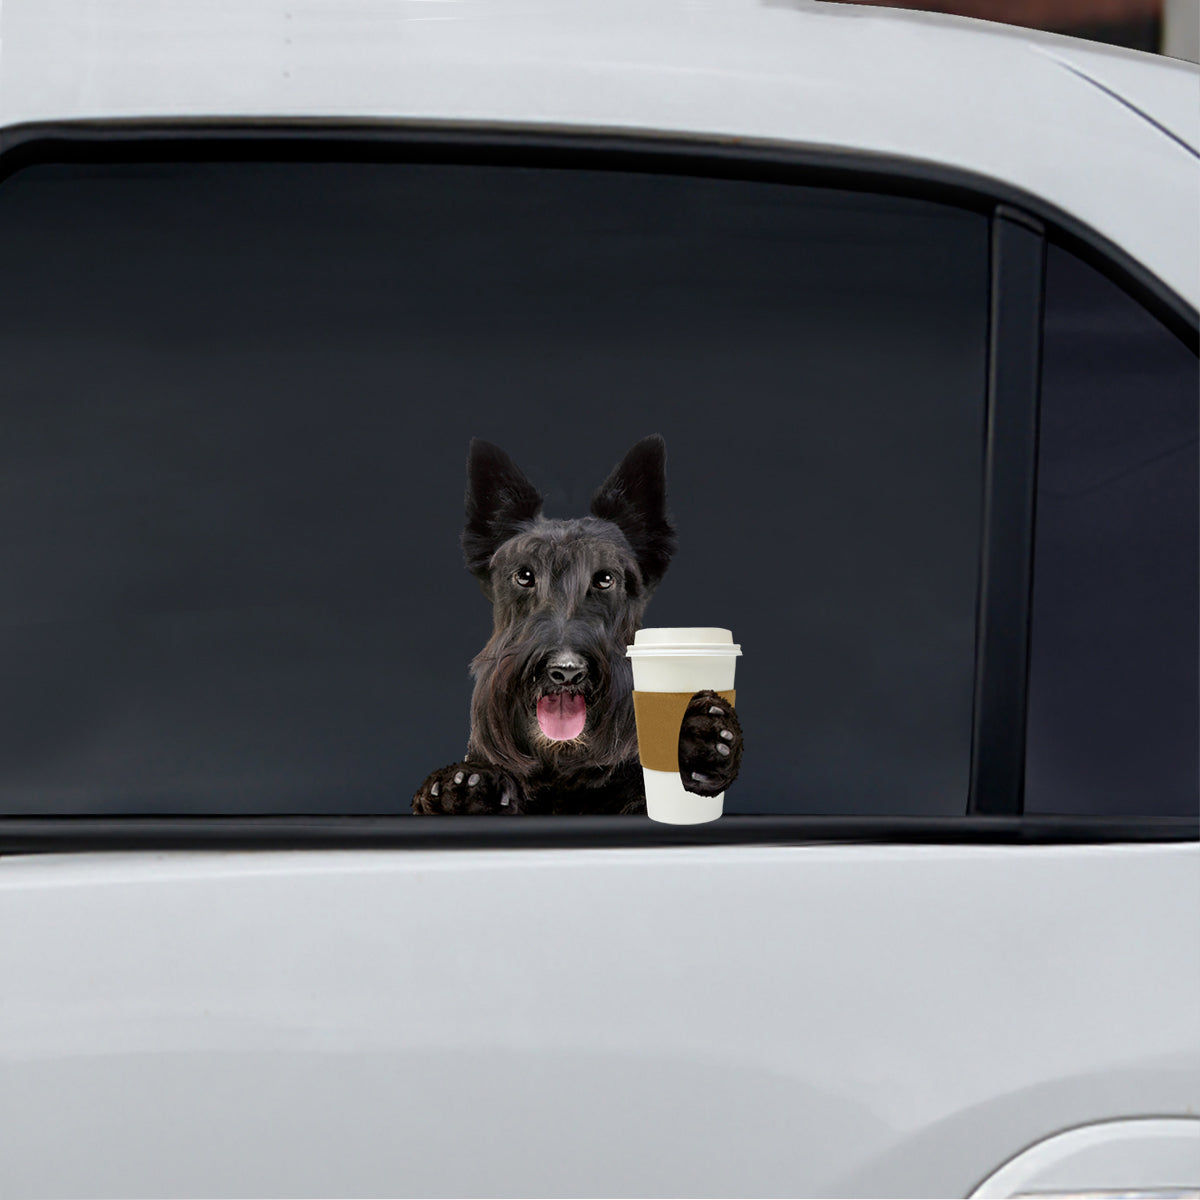 Good Morning - Scottish Terrier Car/ Door/ Fridge/ Laptop Sticker V1